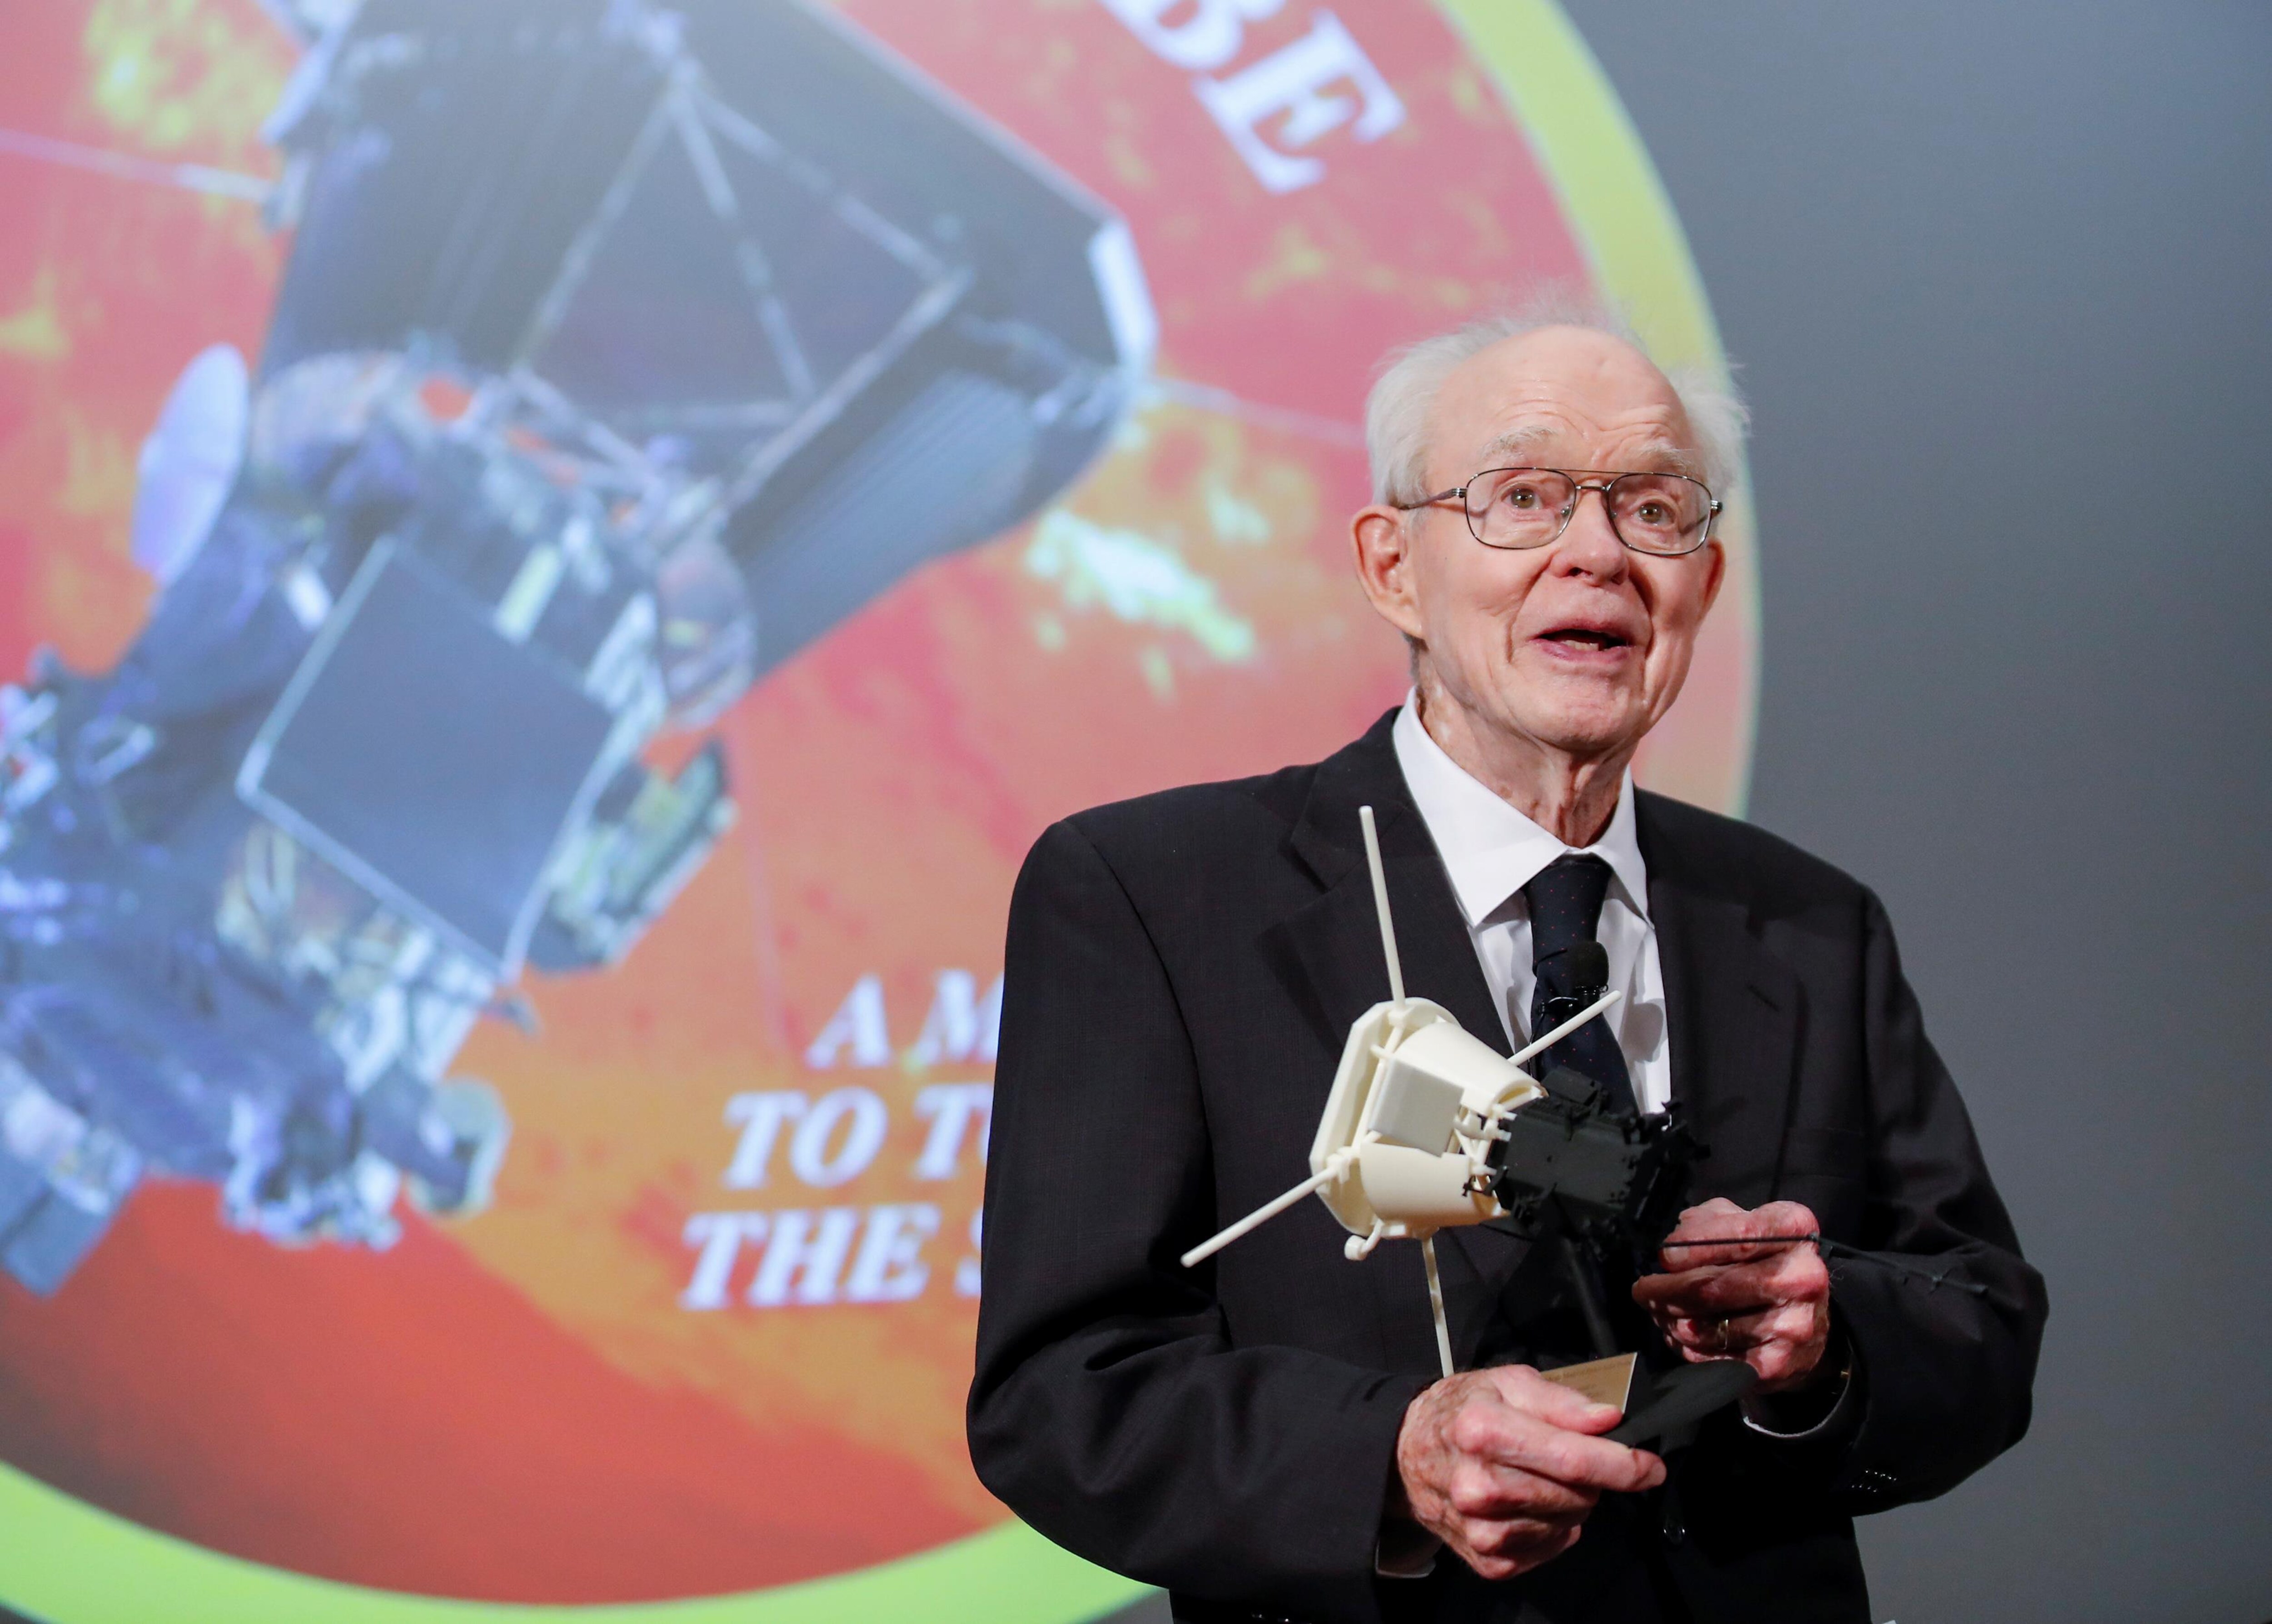 Un scientifique tenant une maquette devant une projection d'un logo de mission spatiale.